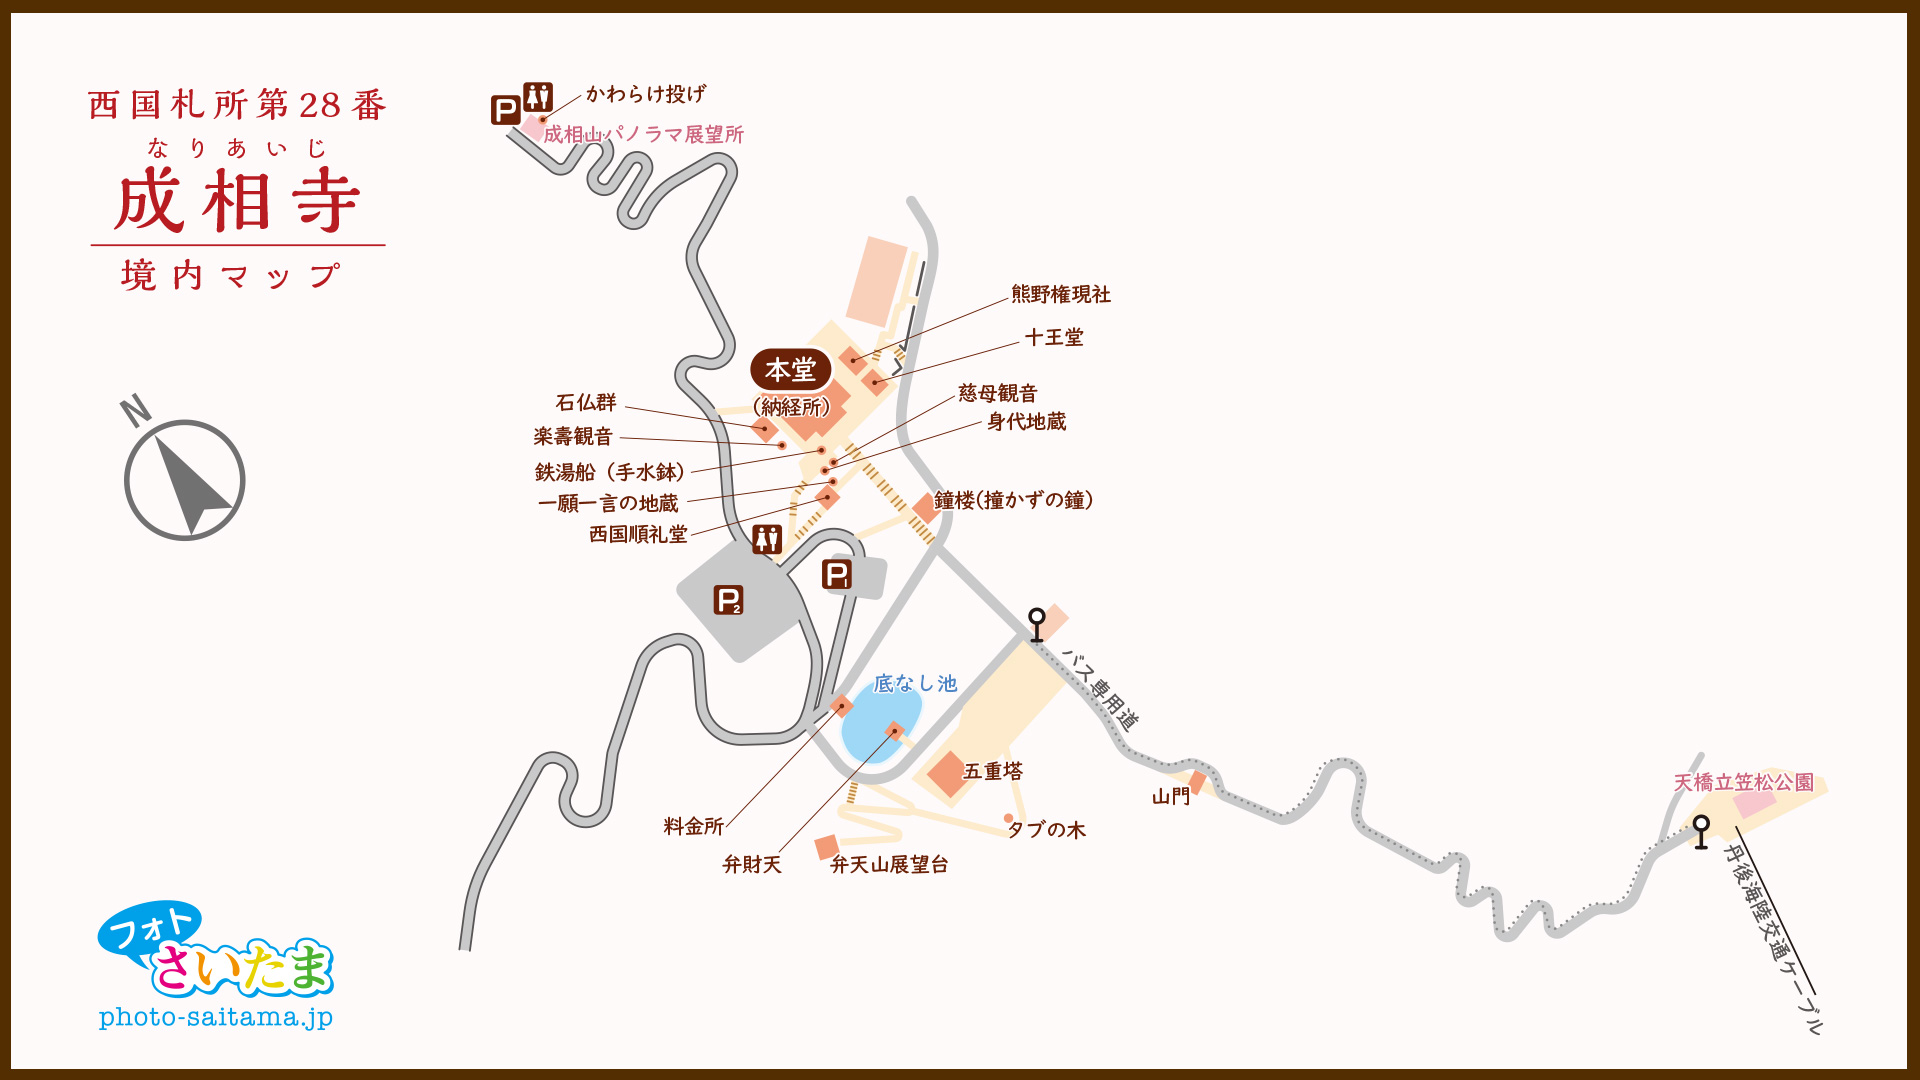 西国札所 第２８番【成相山・成相寺】境内マップ | フォトさいたま